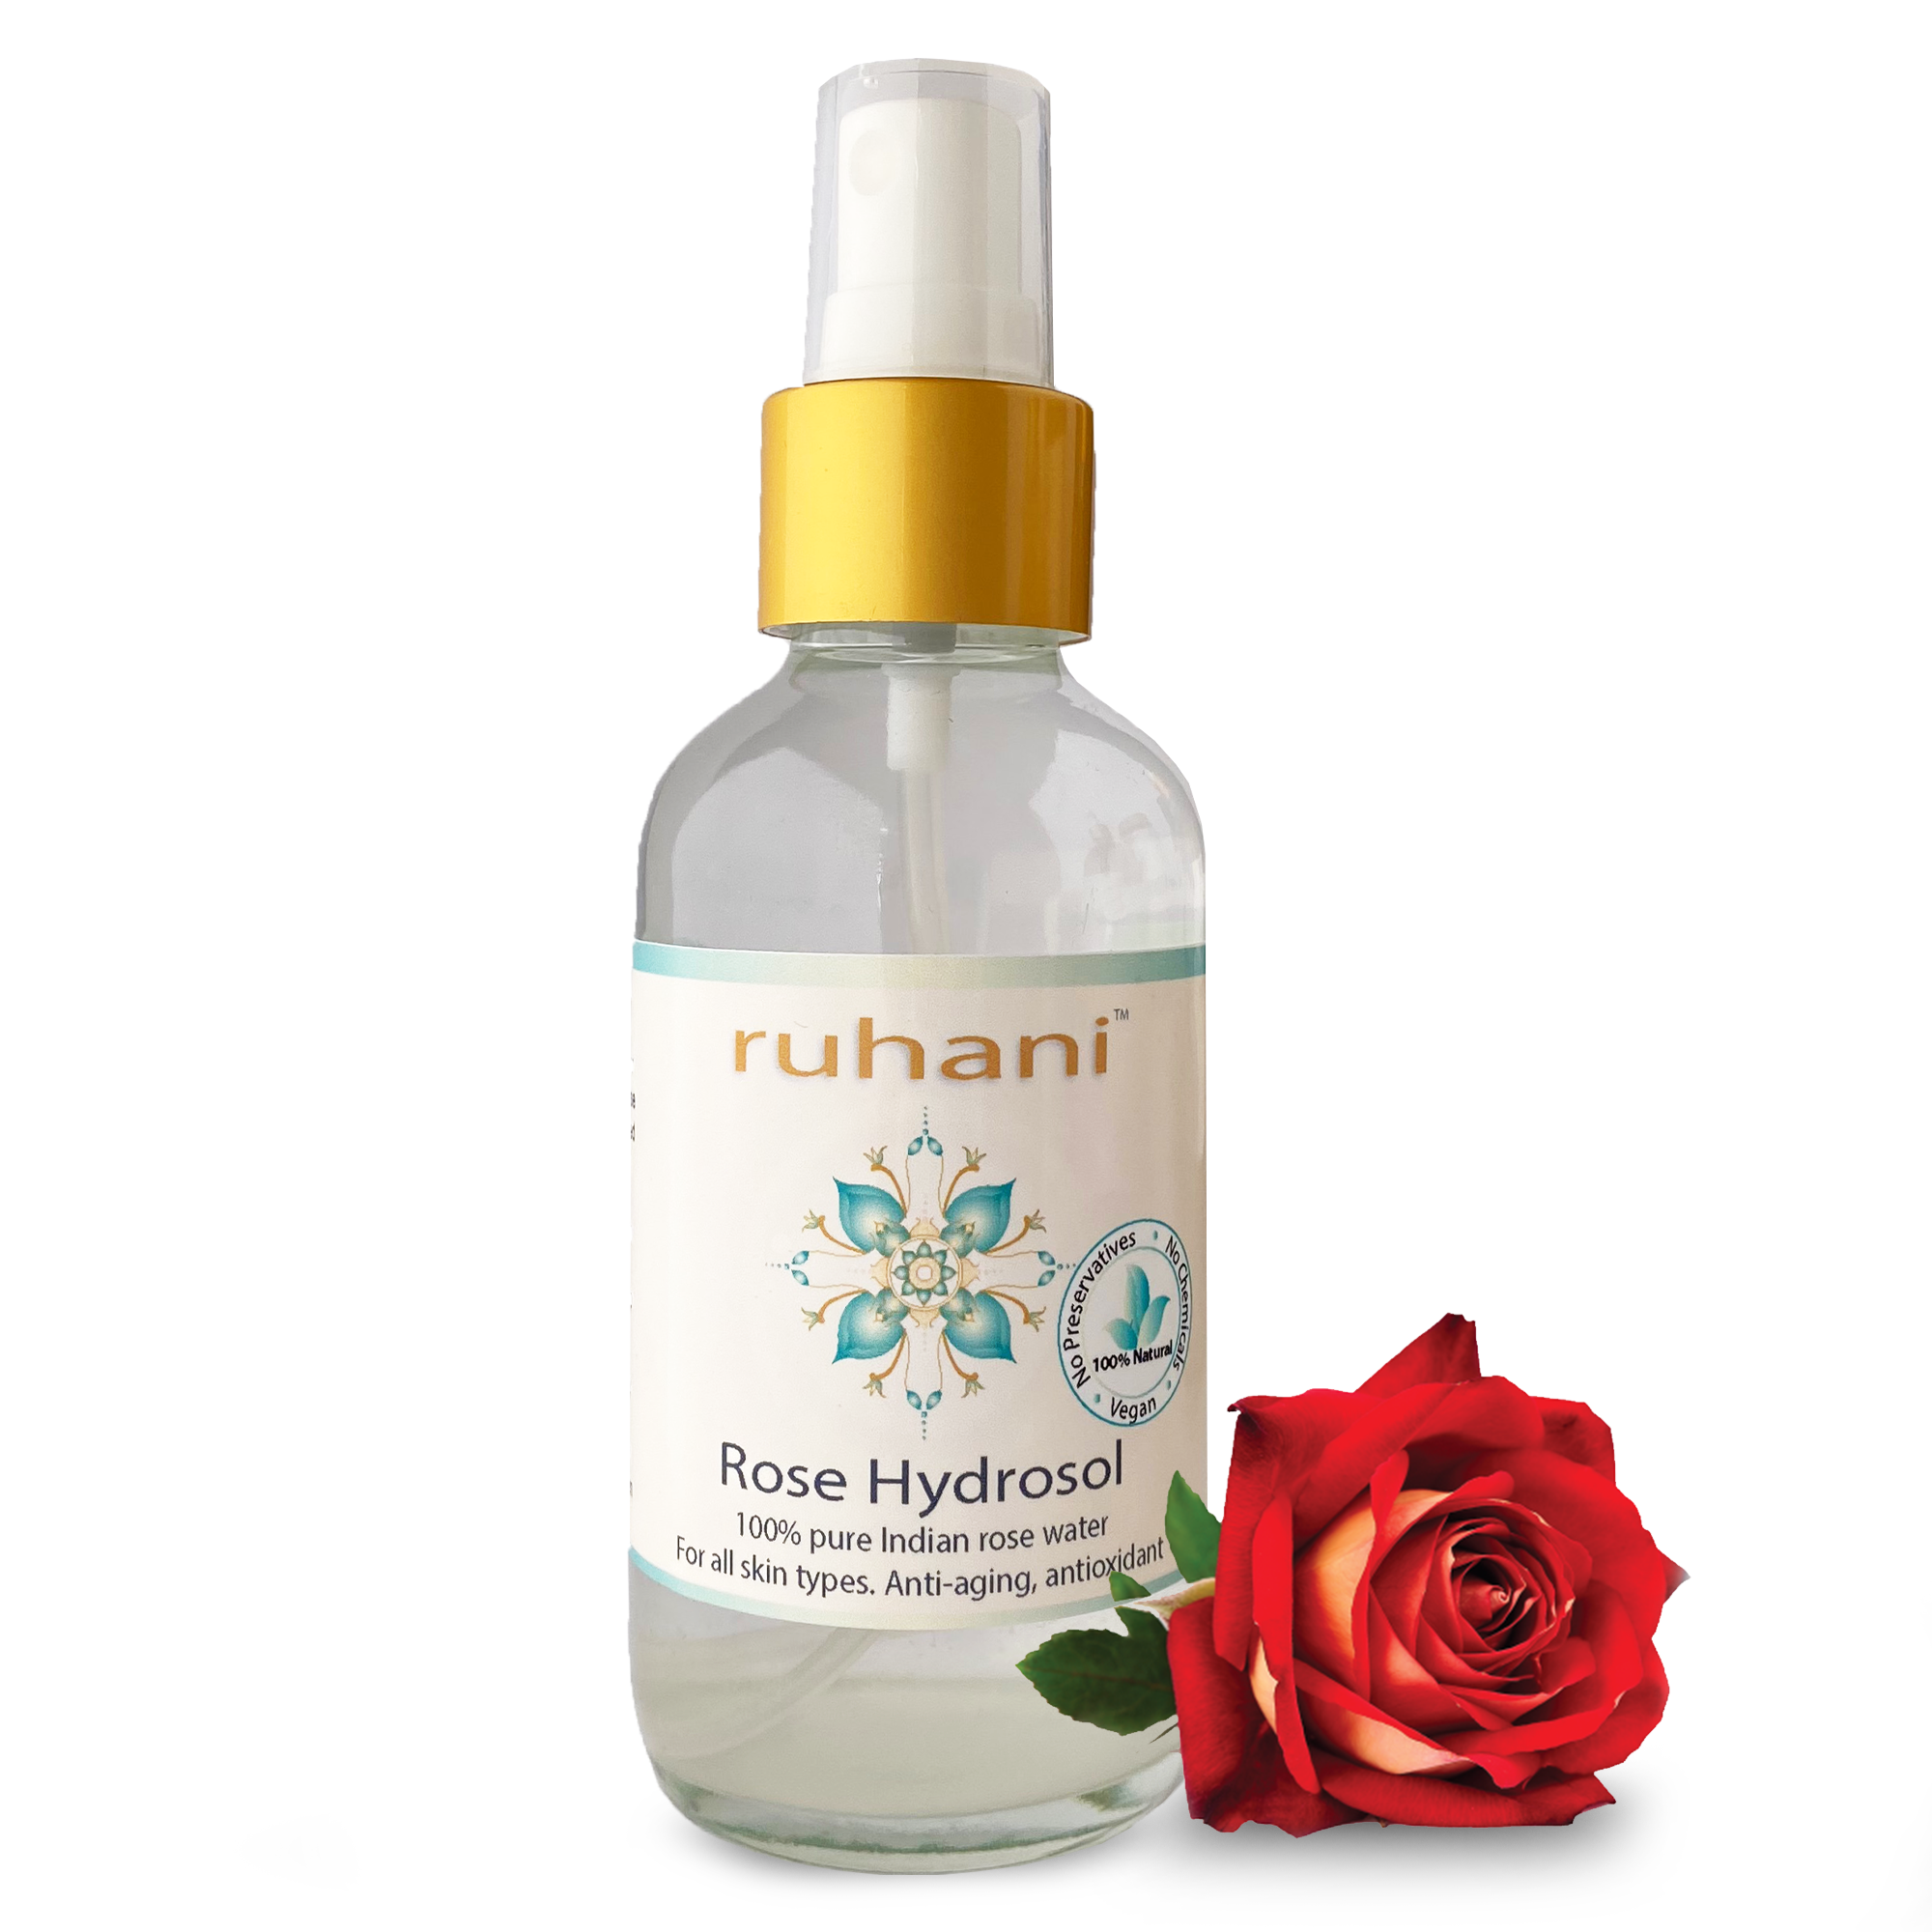 ss-ruhani-rose-hydrosol-toner-main-image-3.png